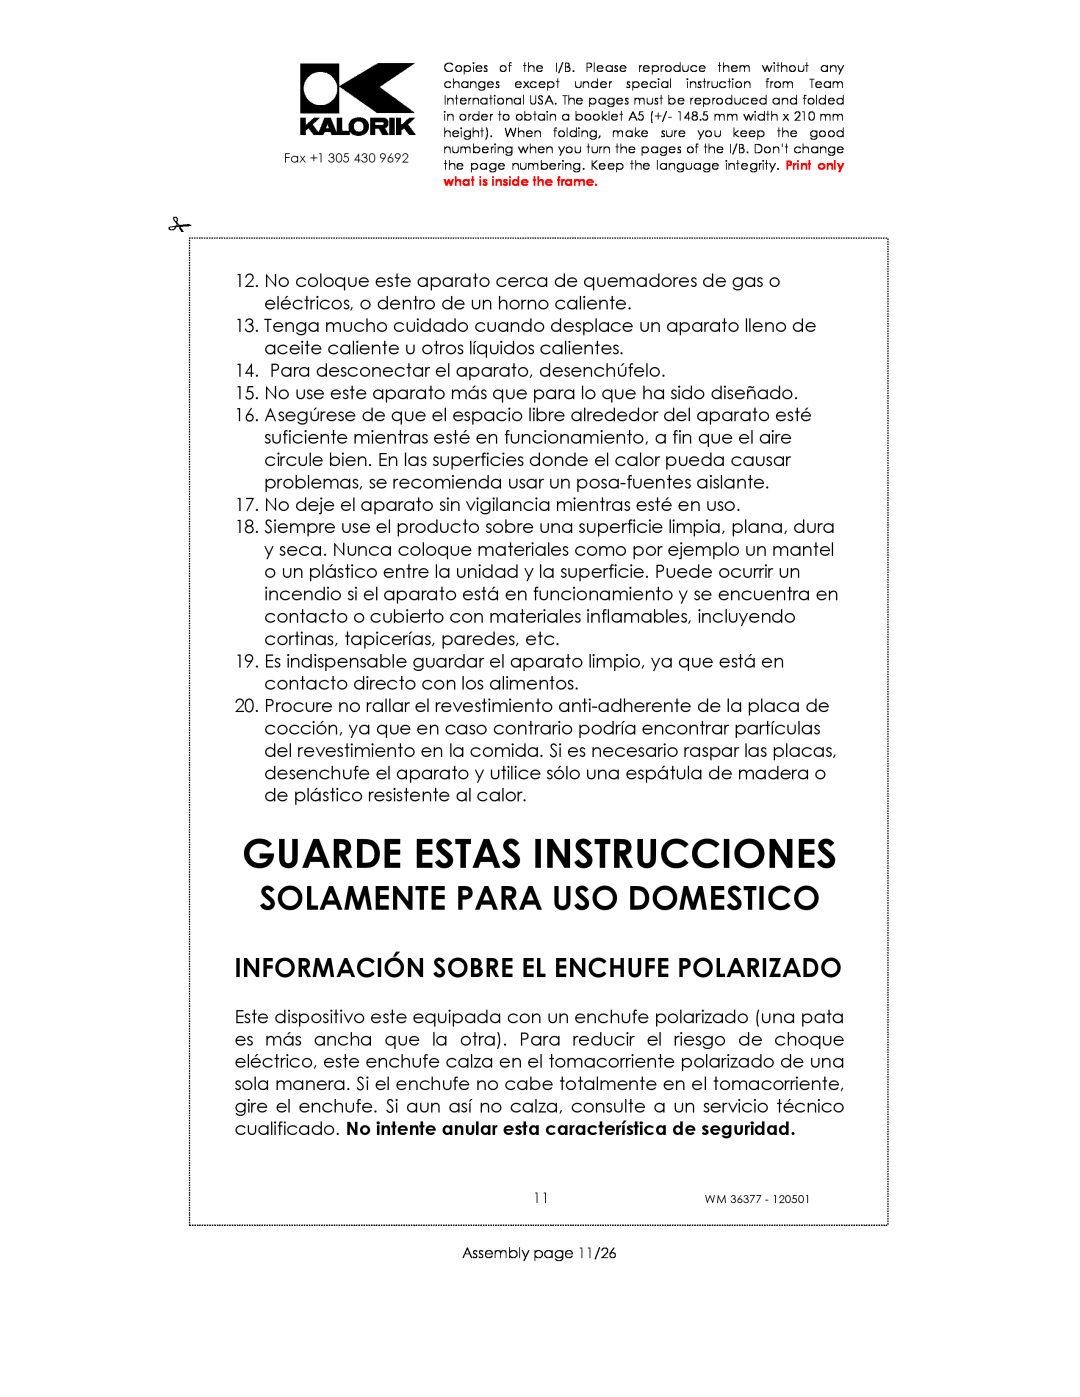 Kalorik WM 36377 manual Guarde Estas Instrucciones, Información Sobre El Enchufe Polarizado, Solamente Para Uso Domestico 